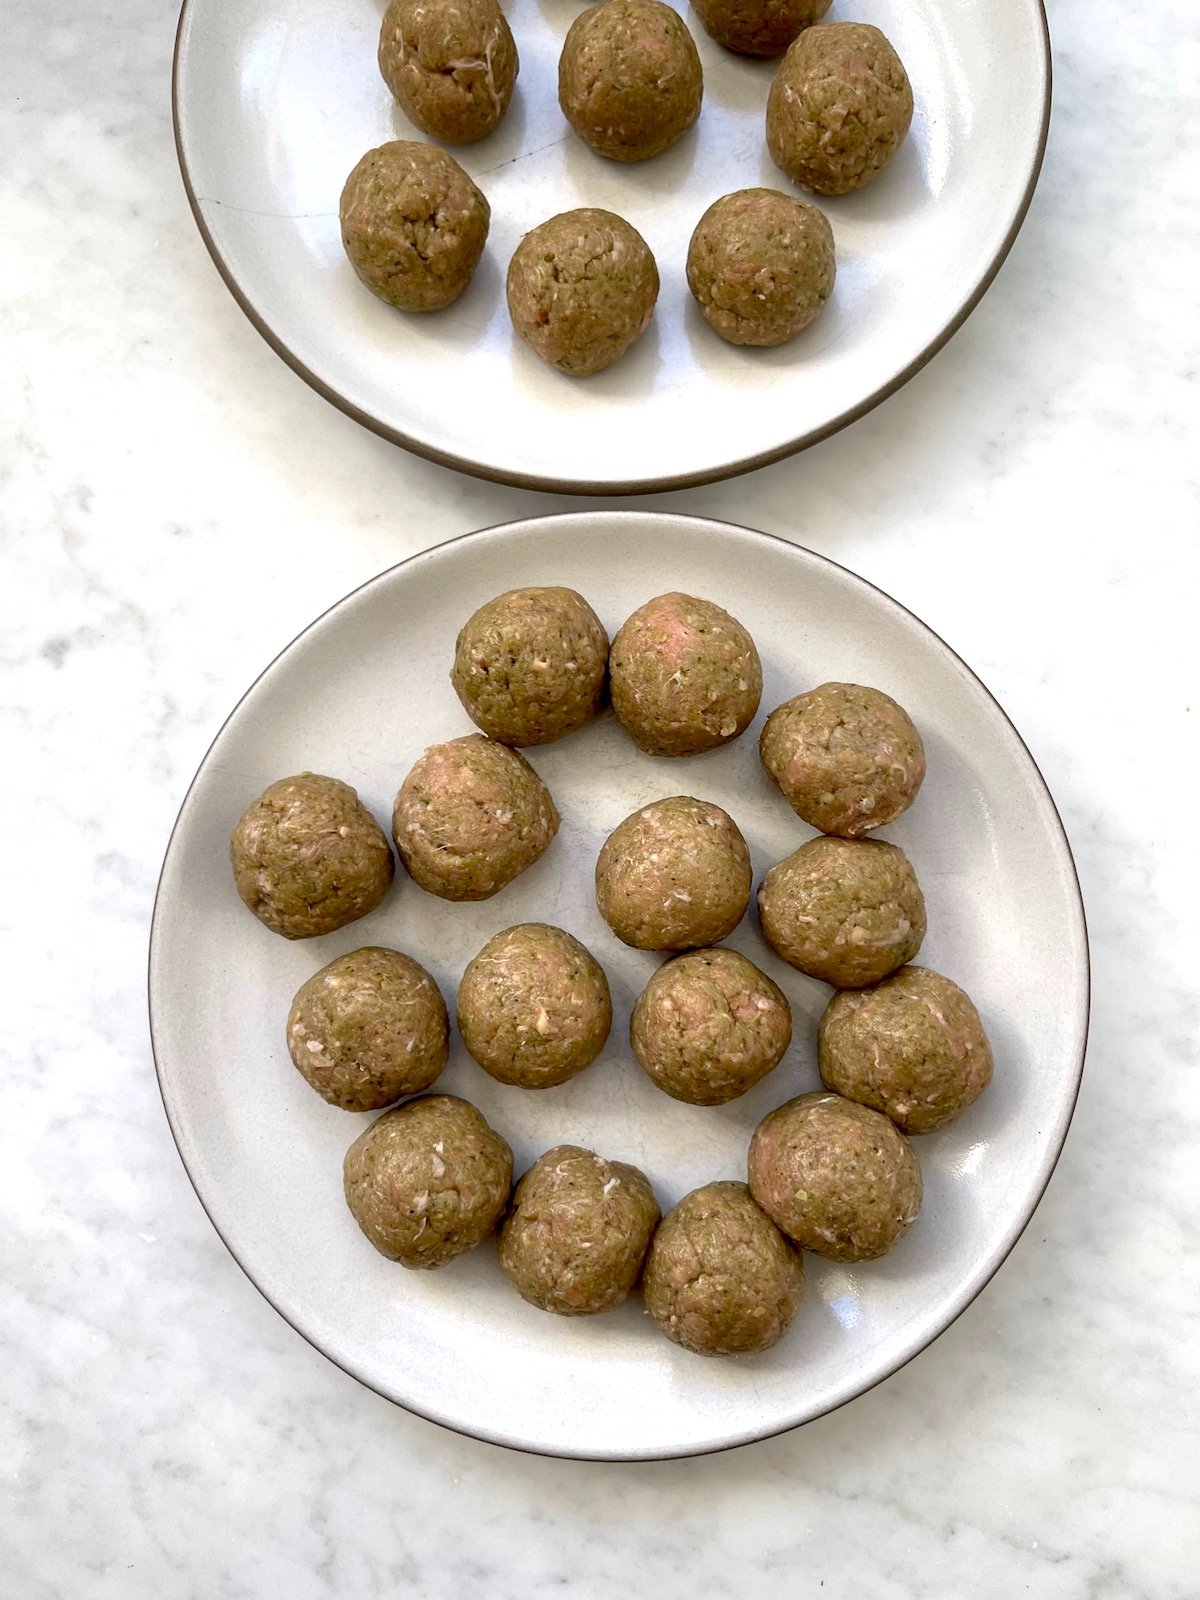 Formed, uncooked Turkey Pesto Meatballs on plates.